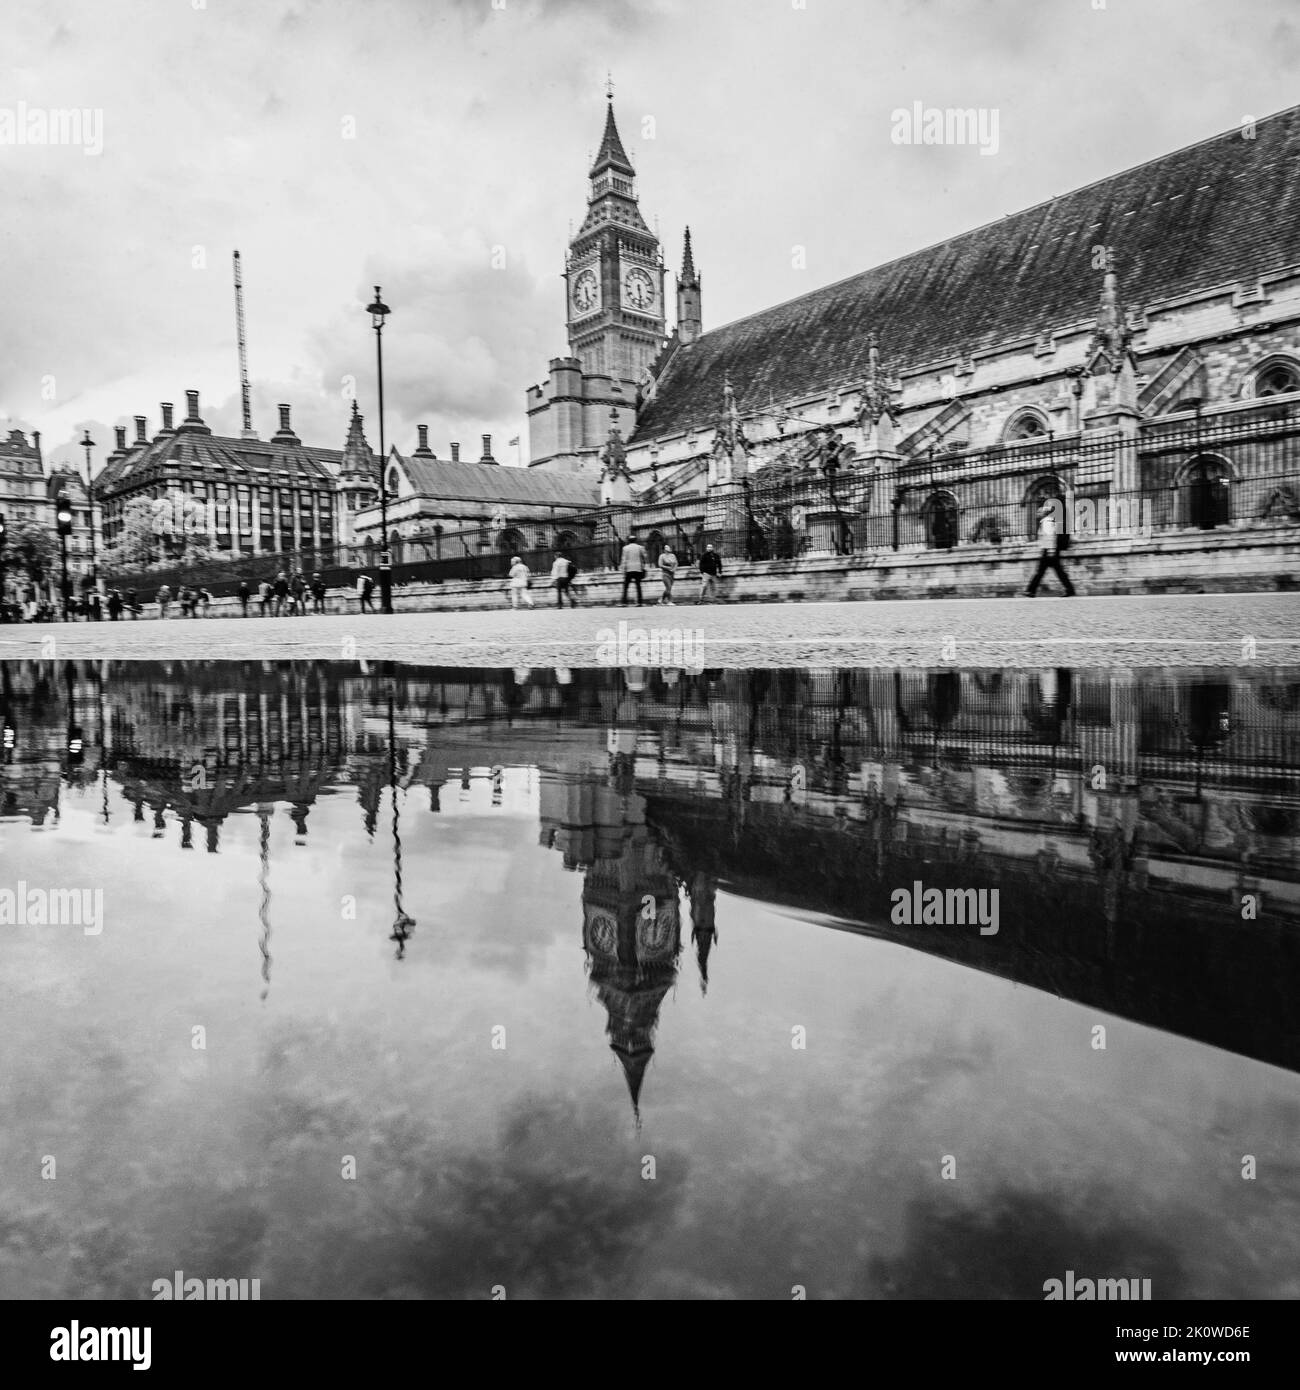 Il Parlamento ha riflettuto splendidamente in una pozza dopo la pioggia. Foto Stock